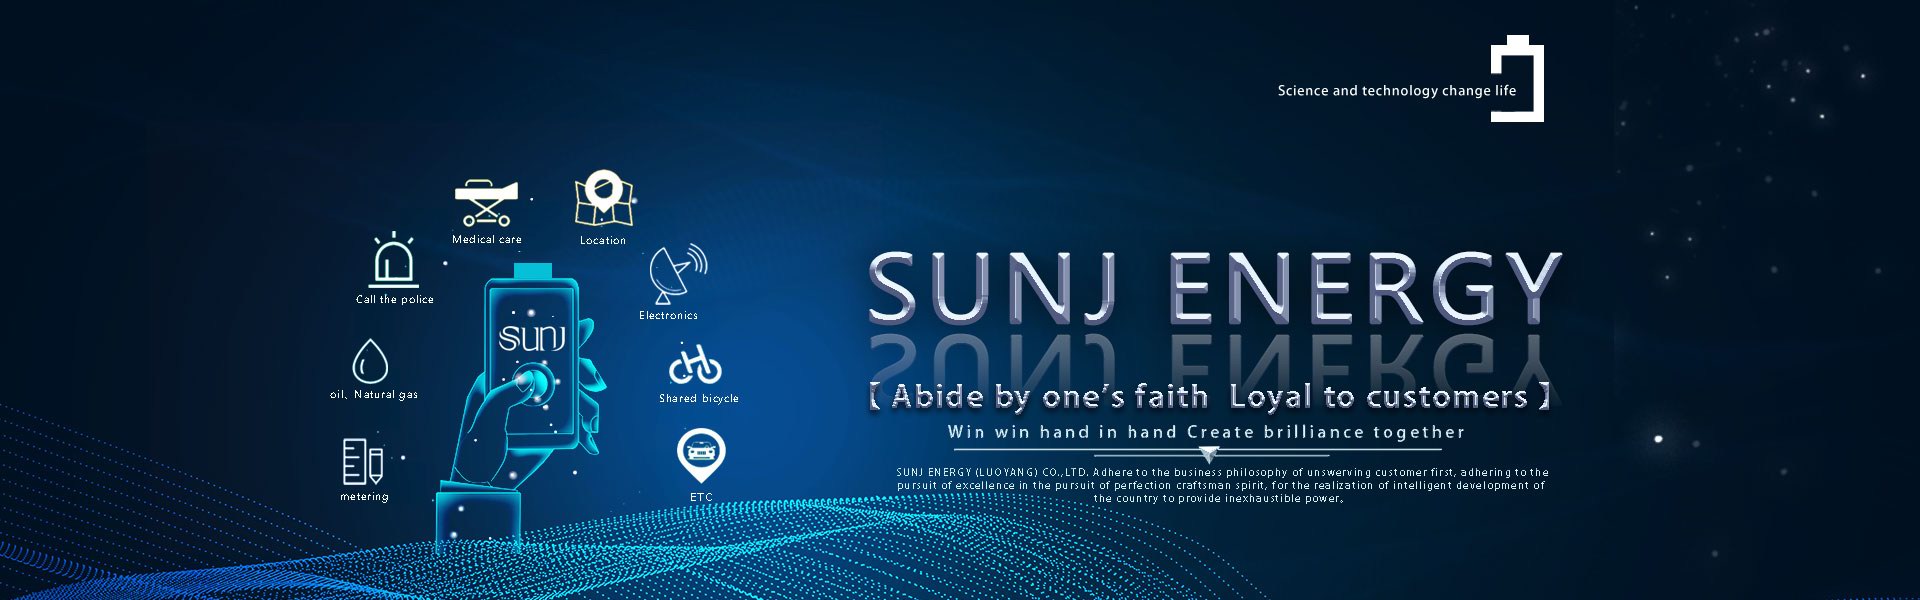 SUNJ Energy (Luoyang) Co., Ltd.